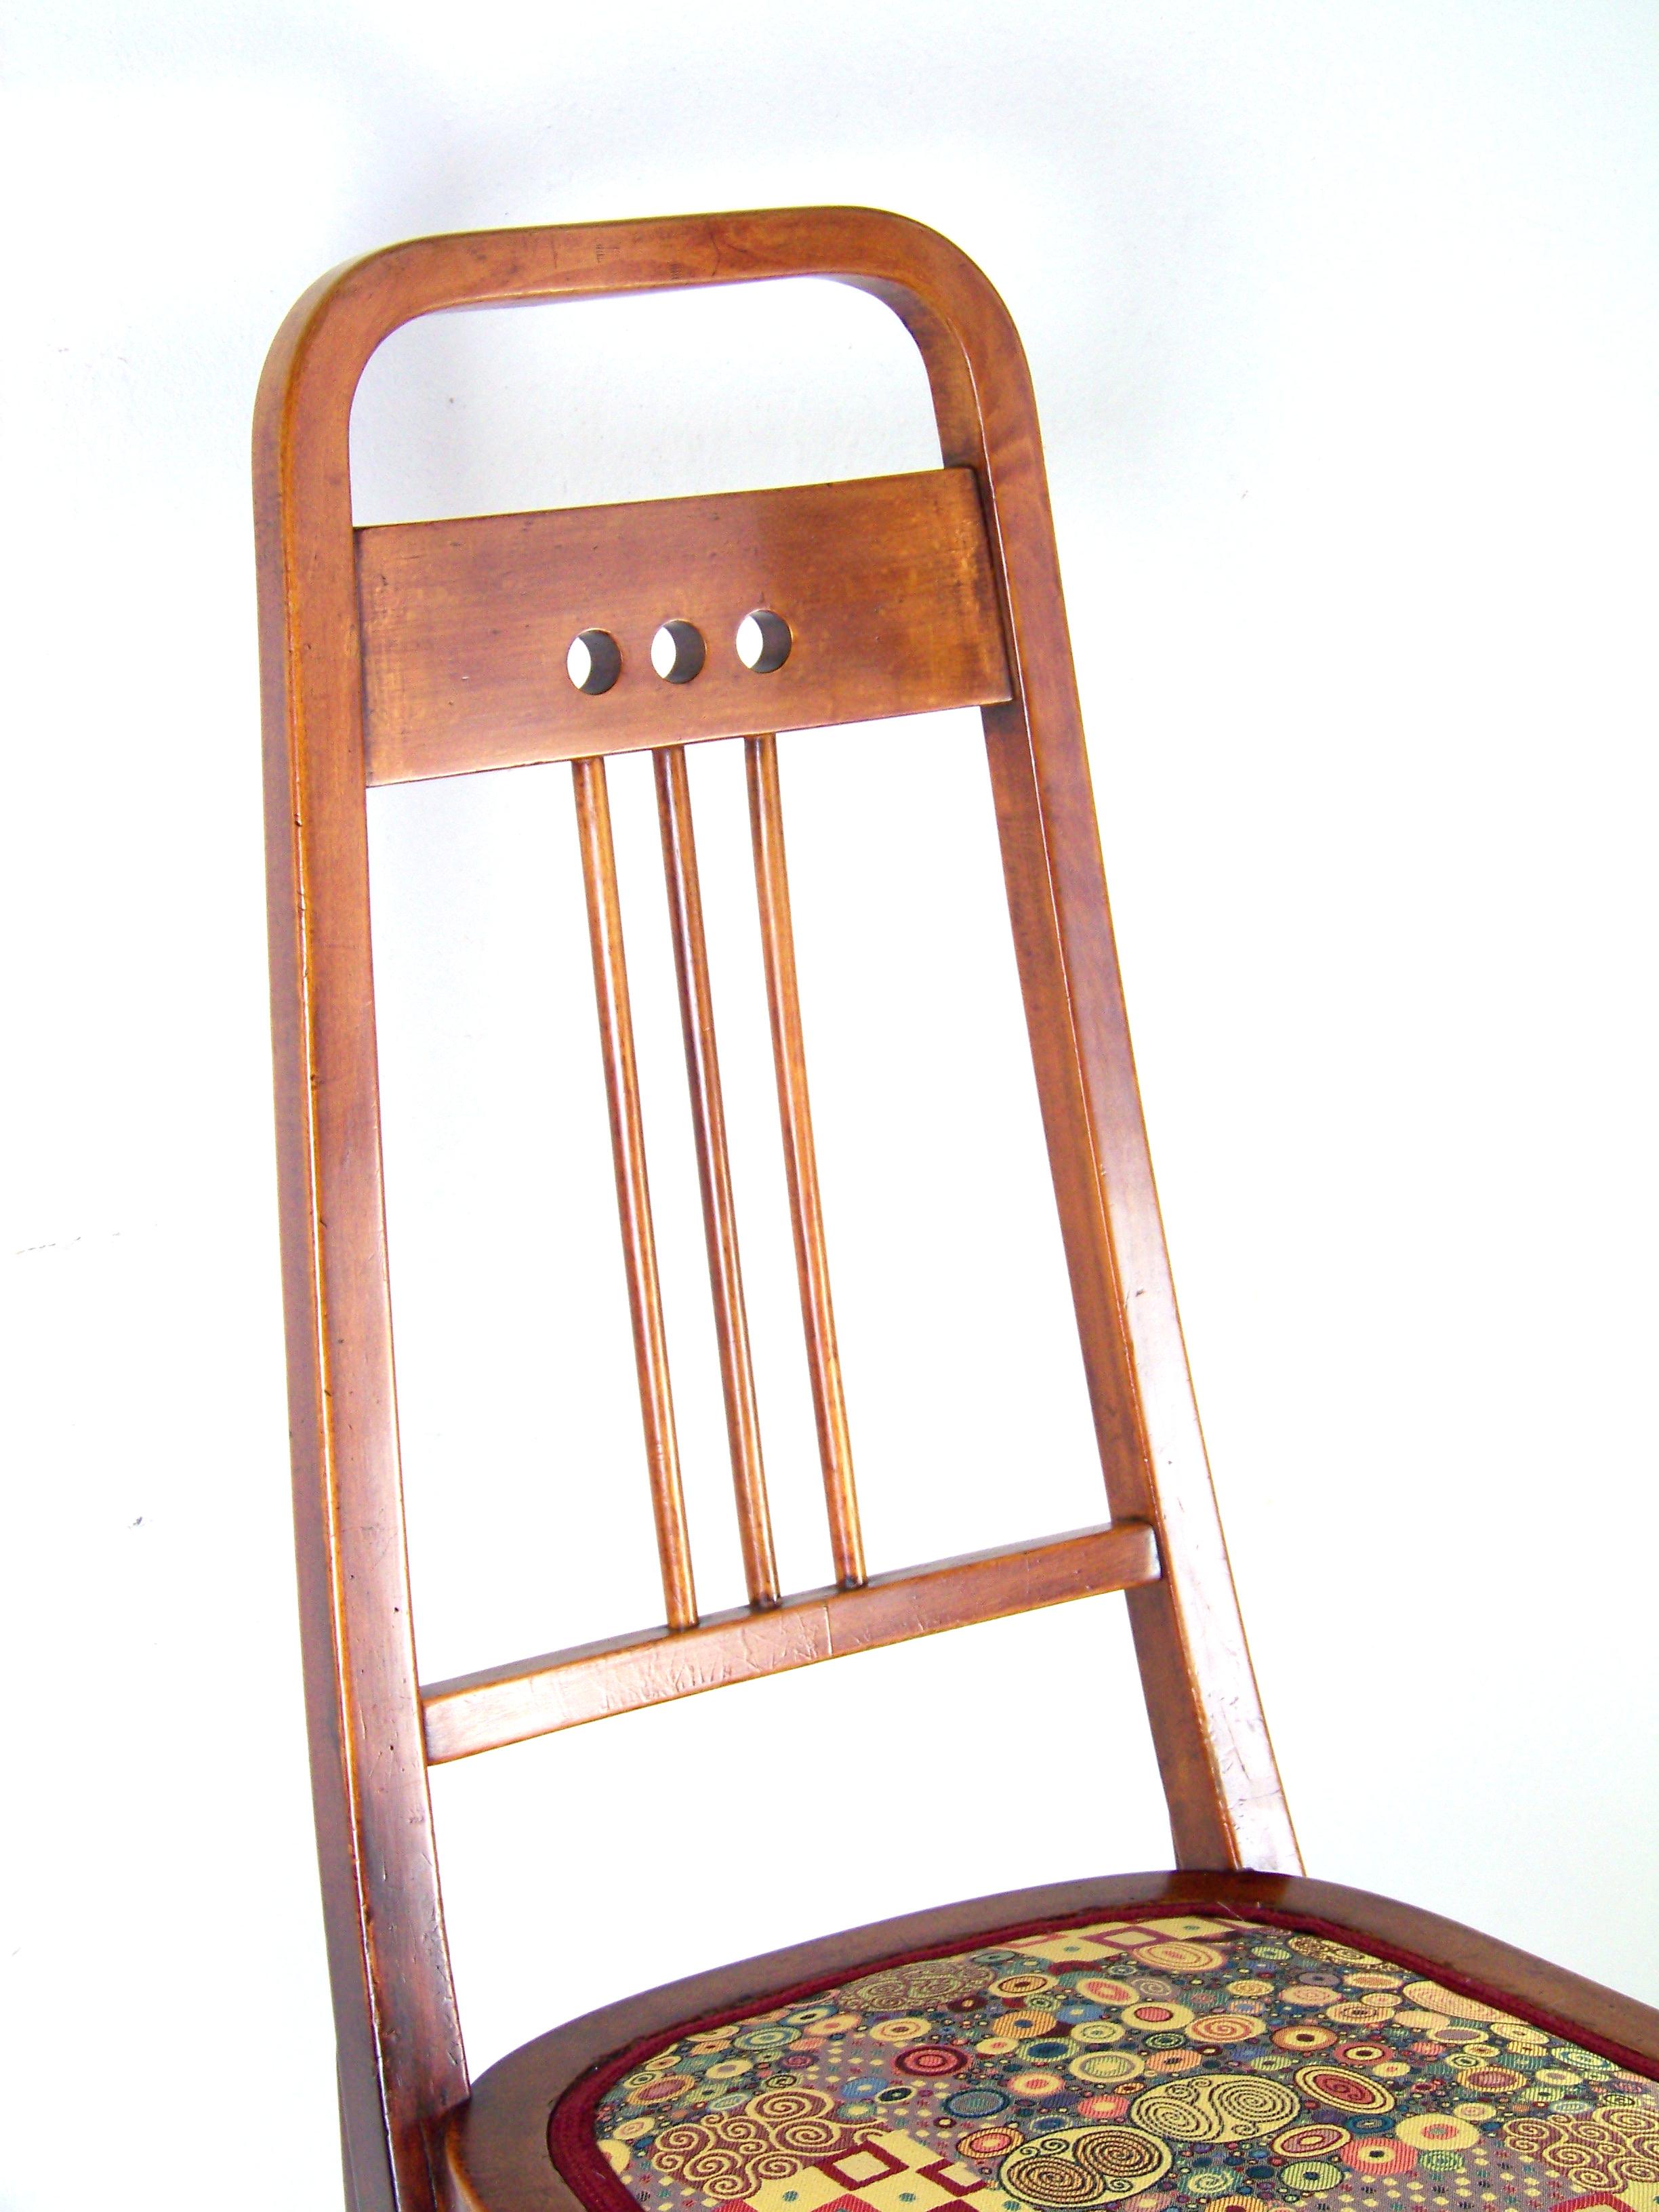 Art Nouveau Chair Thonet Nr. 511, Since 1904, Gustav Klimt